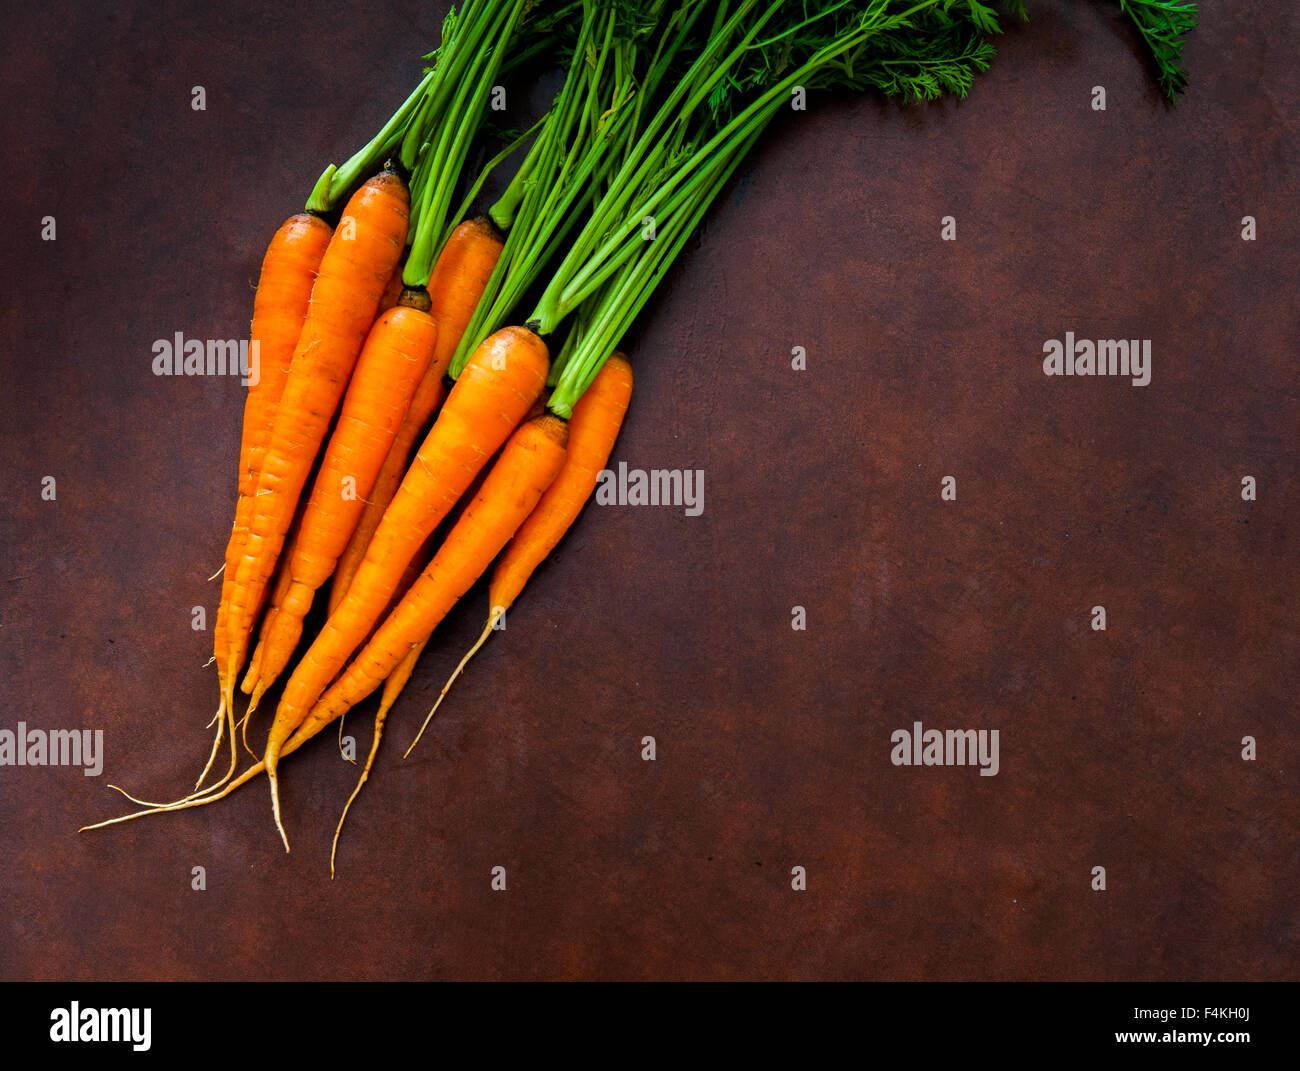 Handvoll frische rohe orange Karotten mit grünen Blättern Bush auf Holzbrett Stockfoto